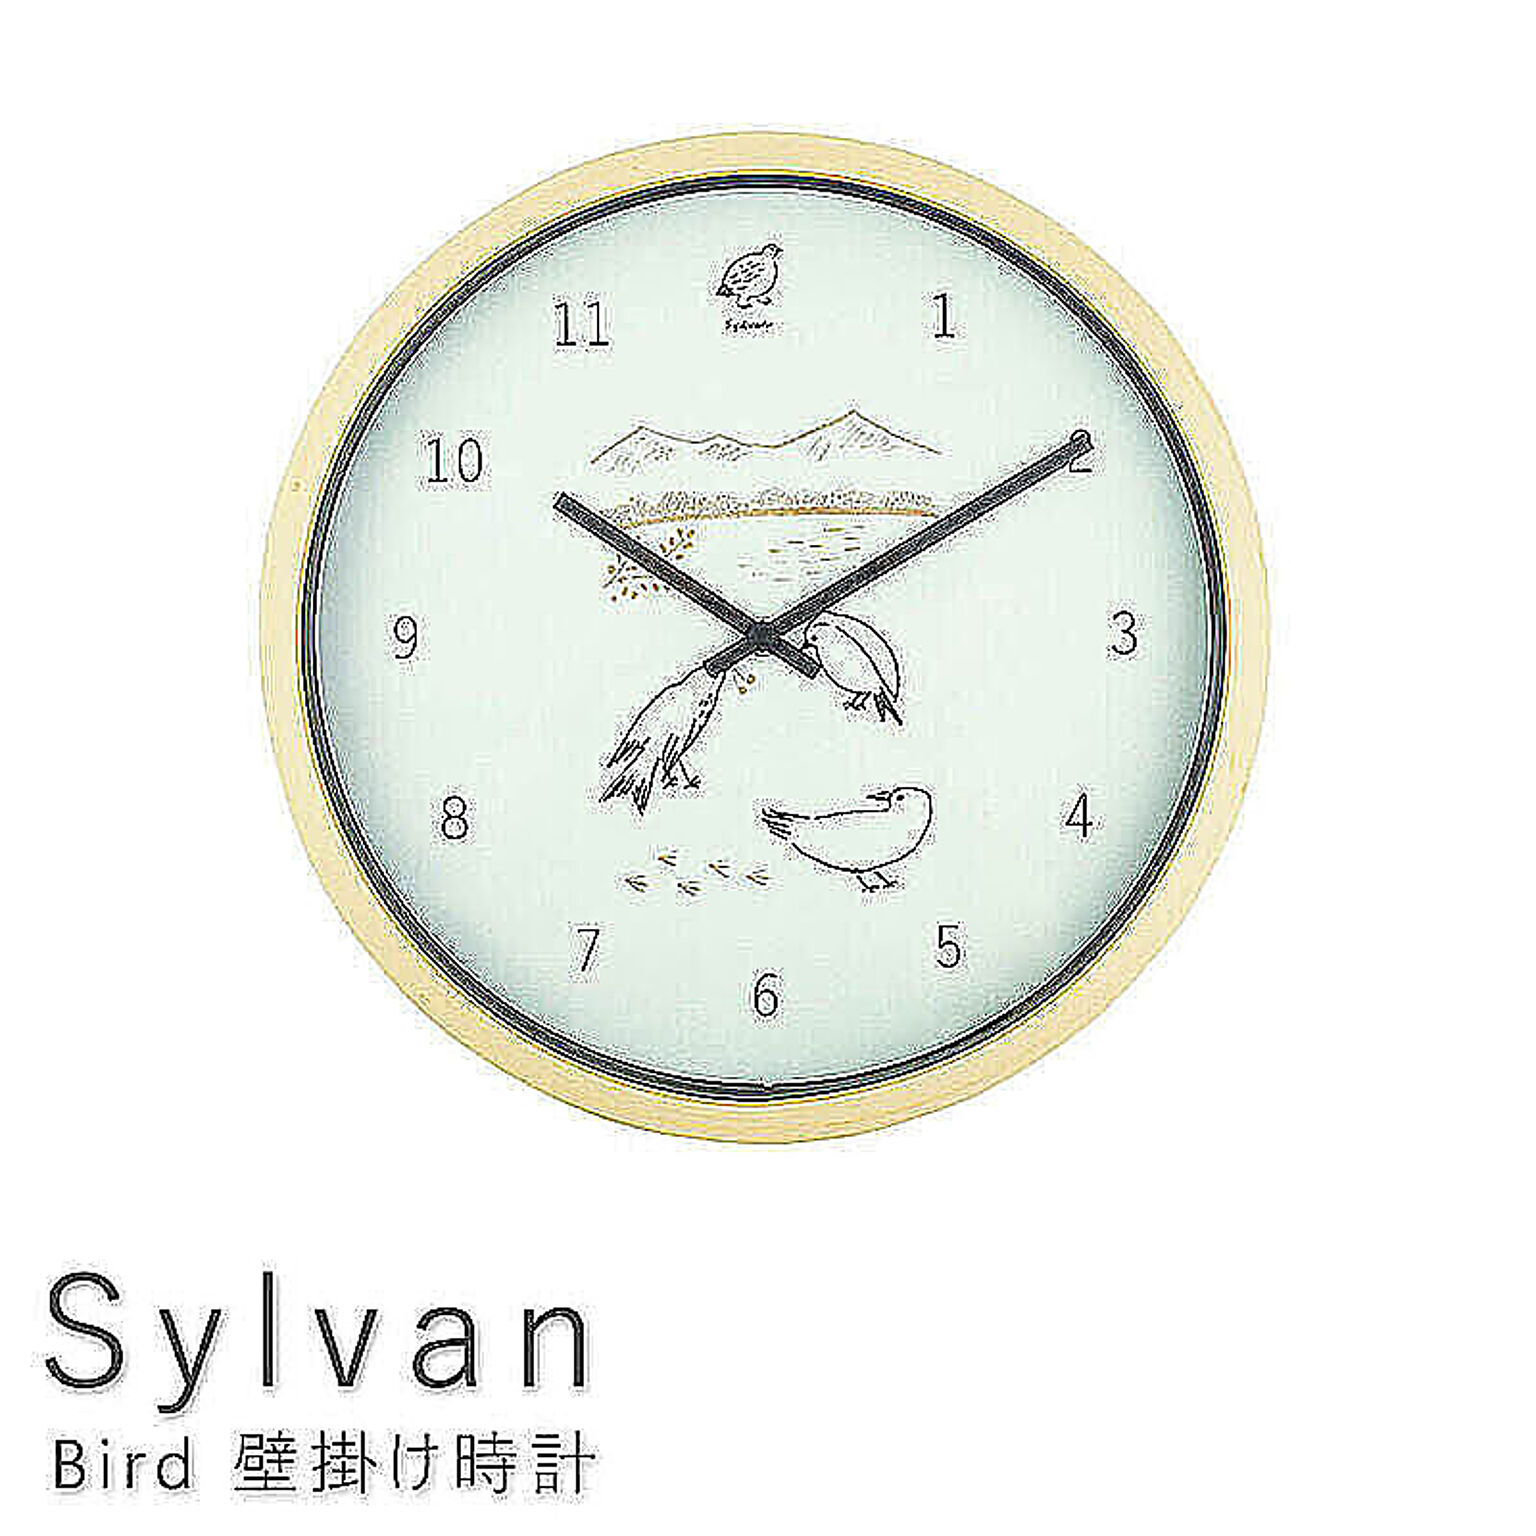 Sylvan（シルヴァン） Bird 壁掛け時計 m11691